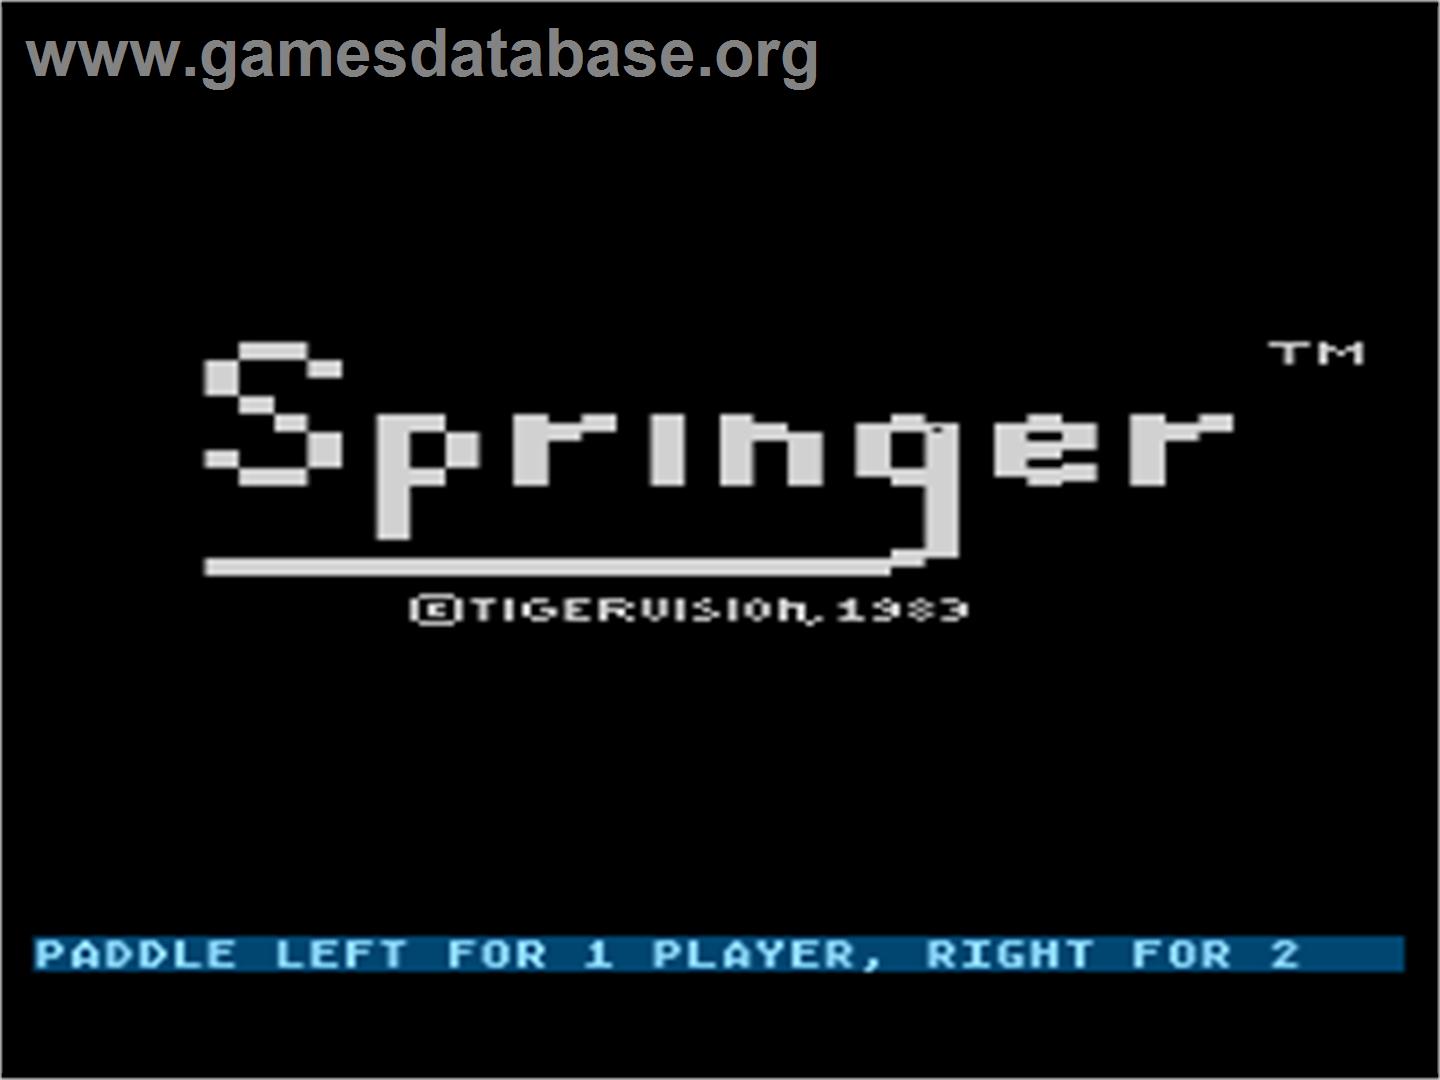 Springer - Atari 8-bit - Artwork - Title Screen